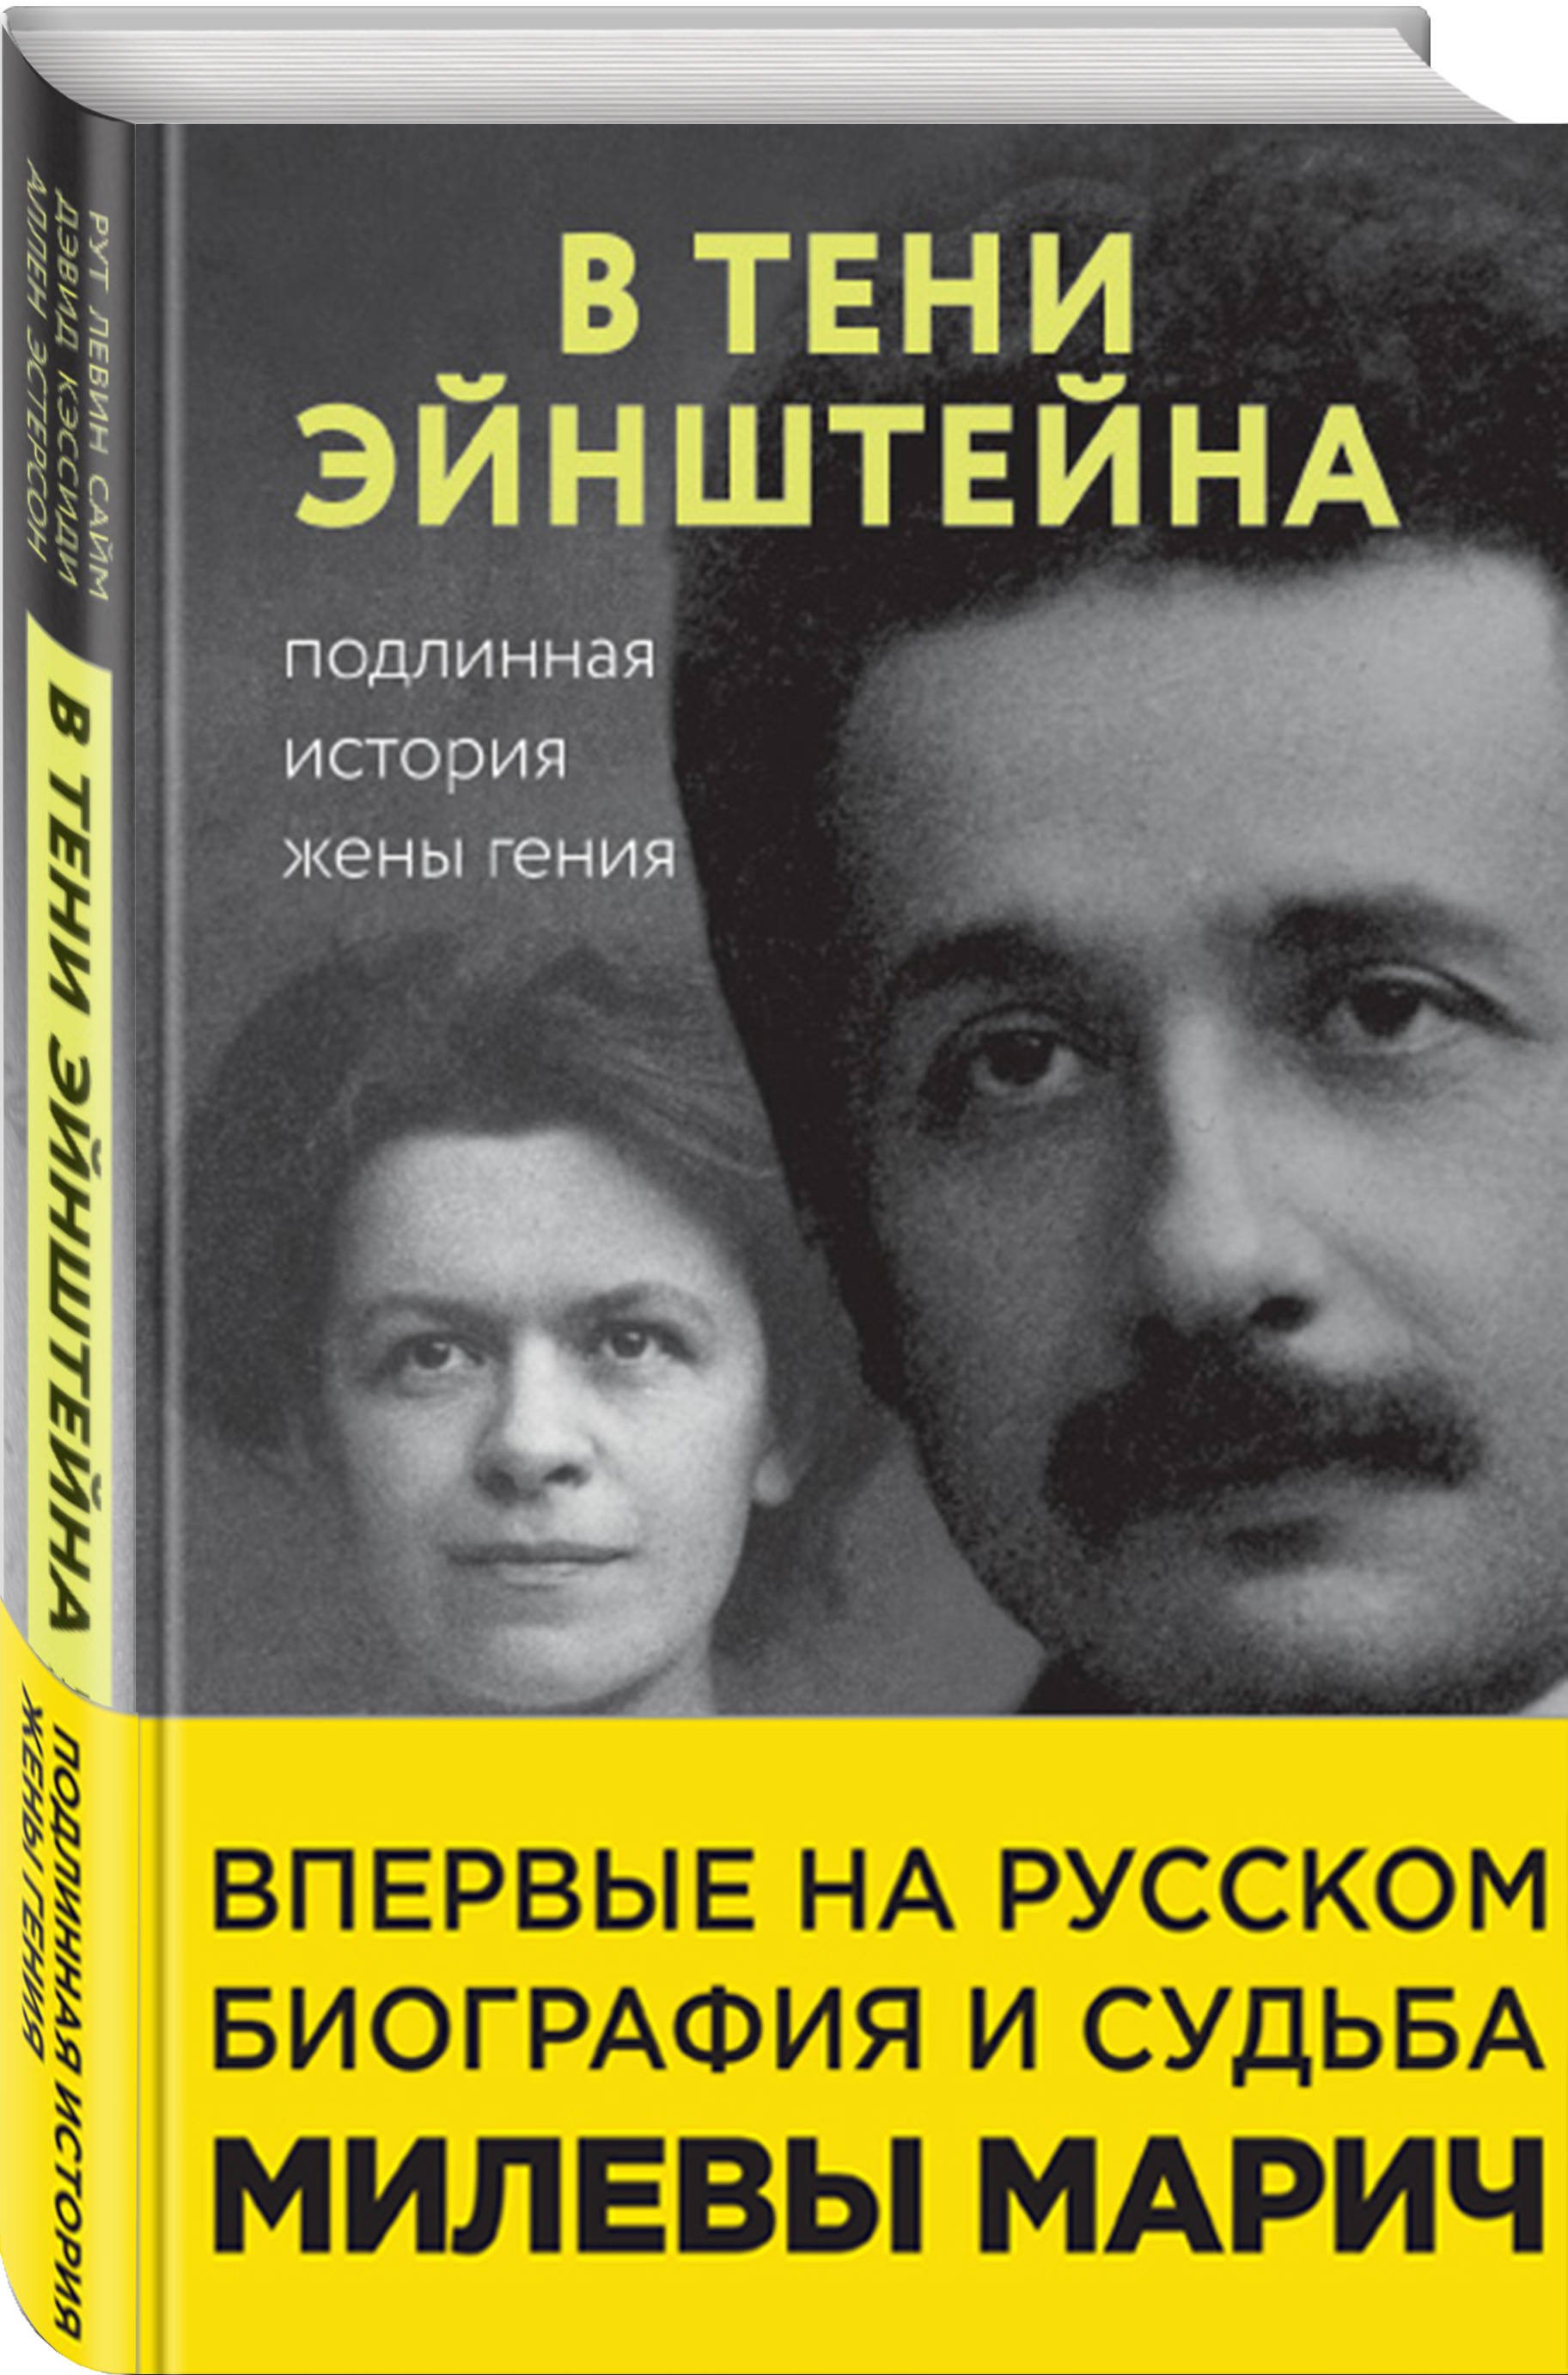 В тени Эйнштейна: подлинная история жены гения. Впервые на русском биография и судьба Милевы Марич